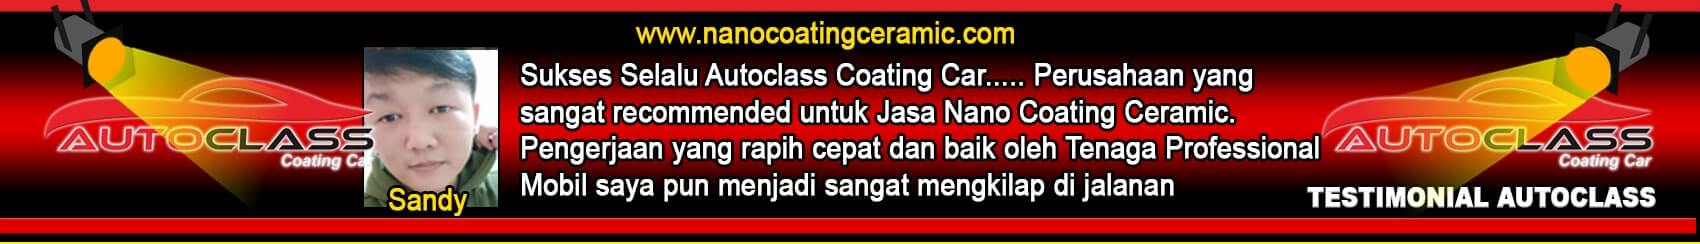 nano coating ceramic